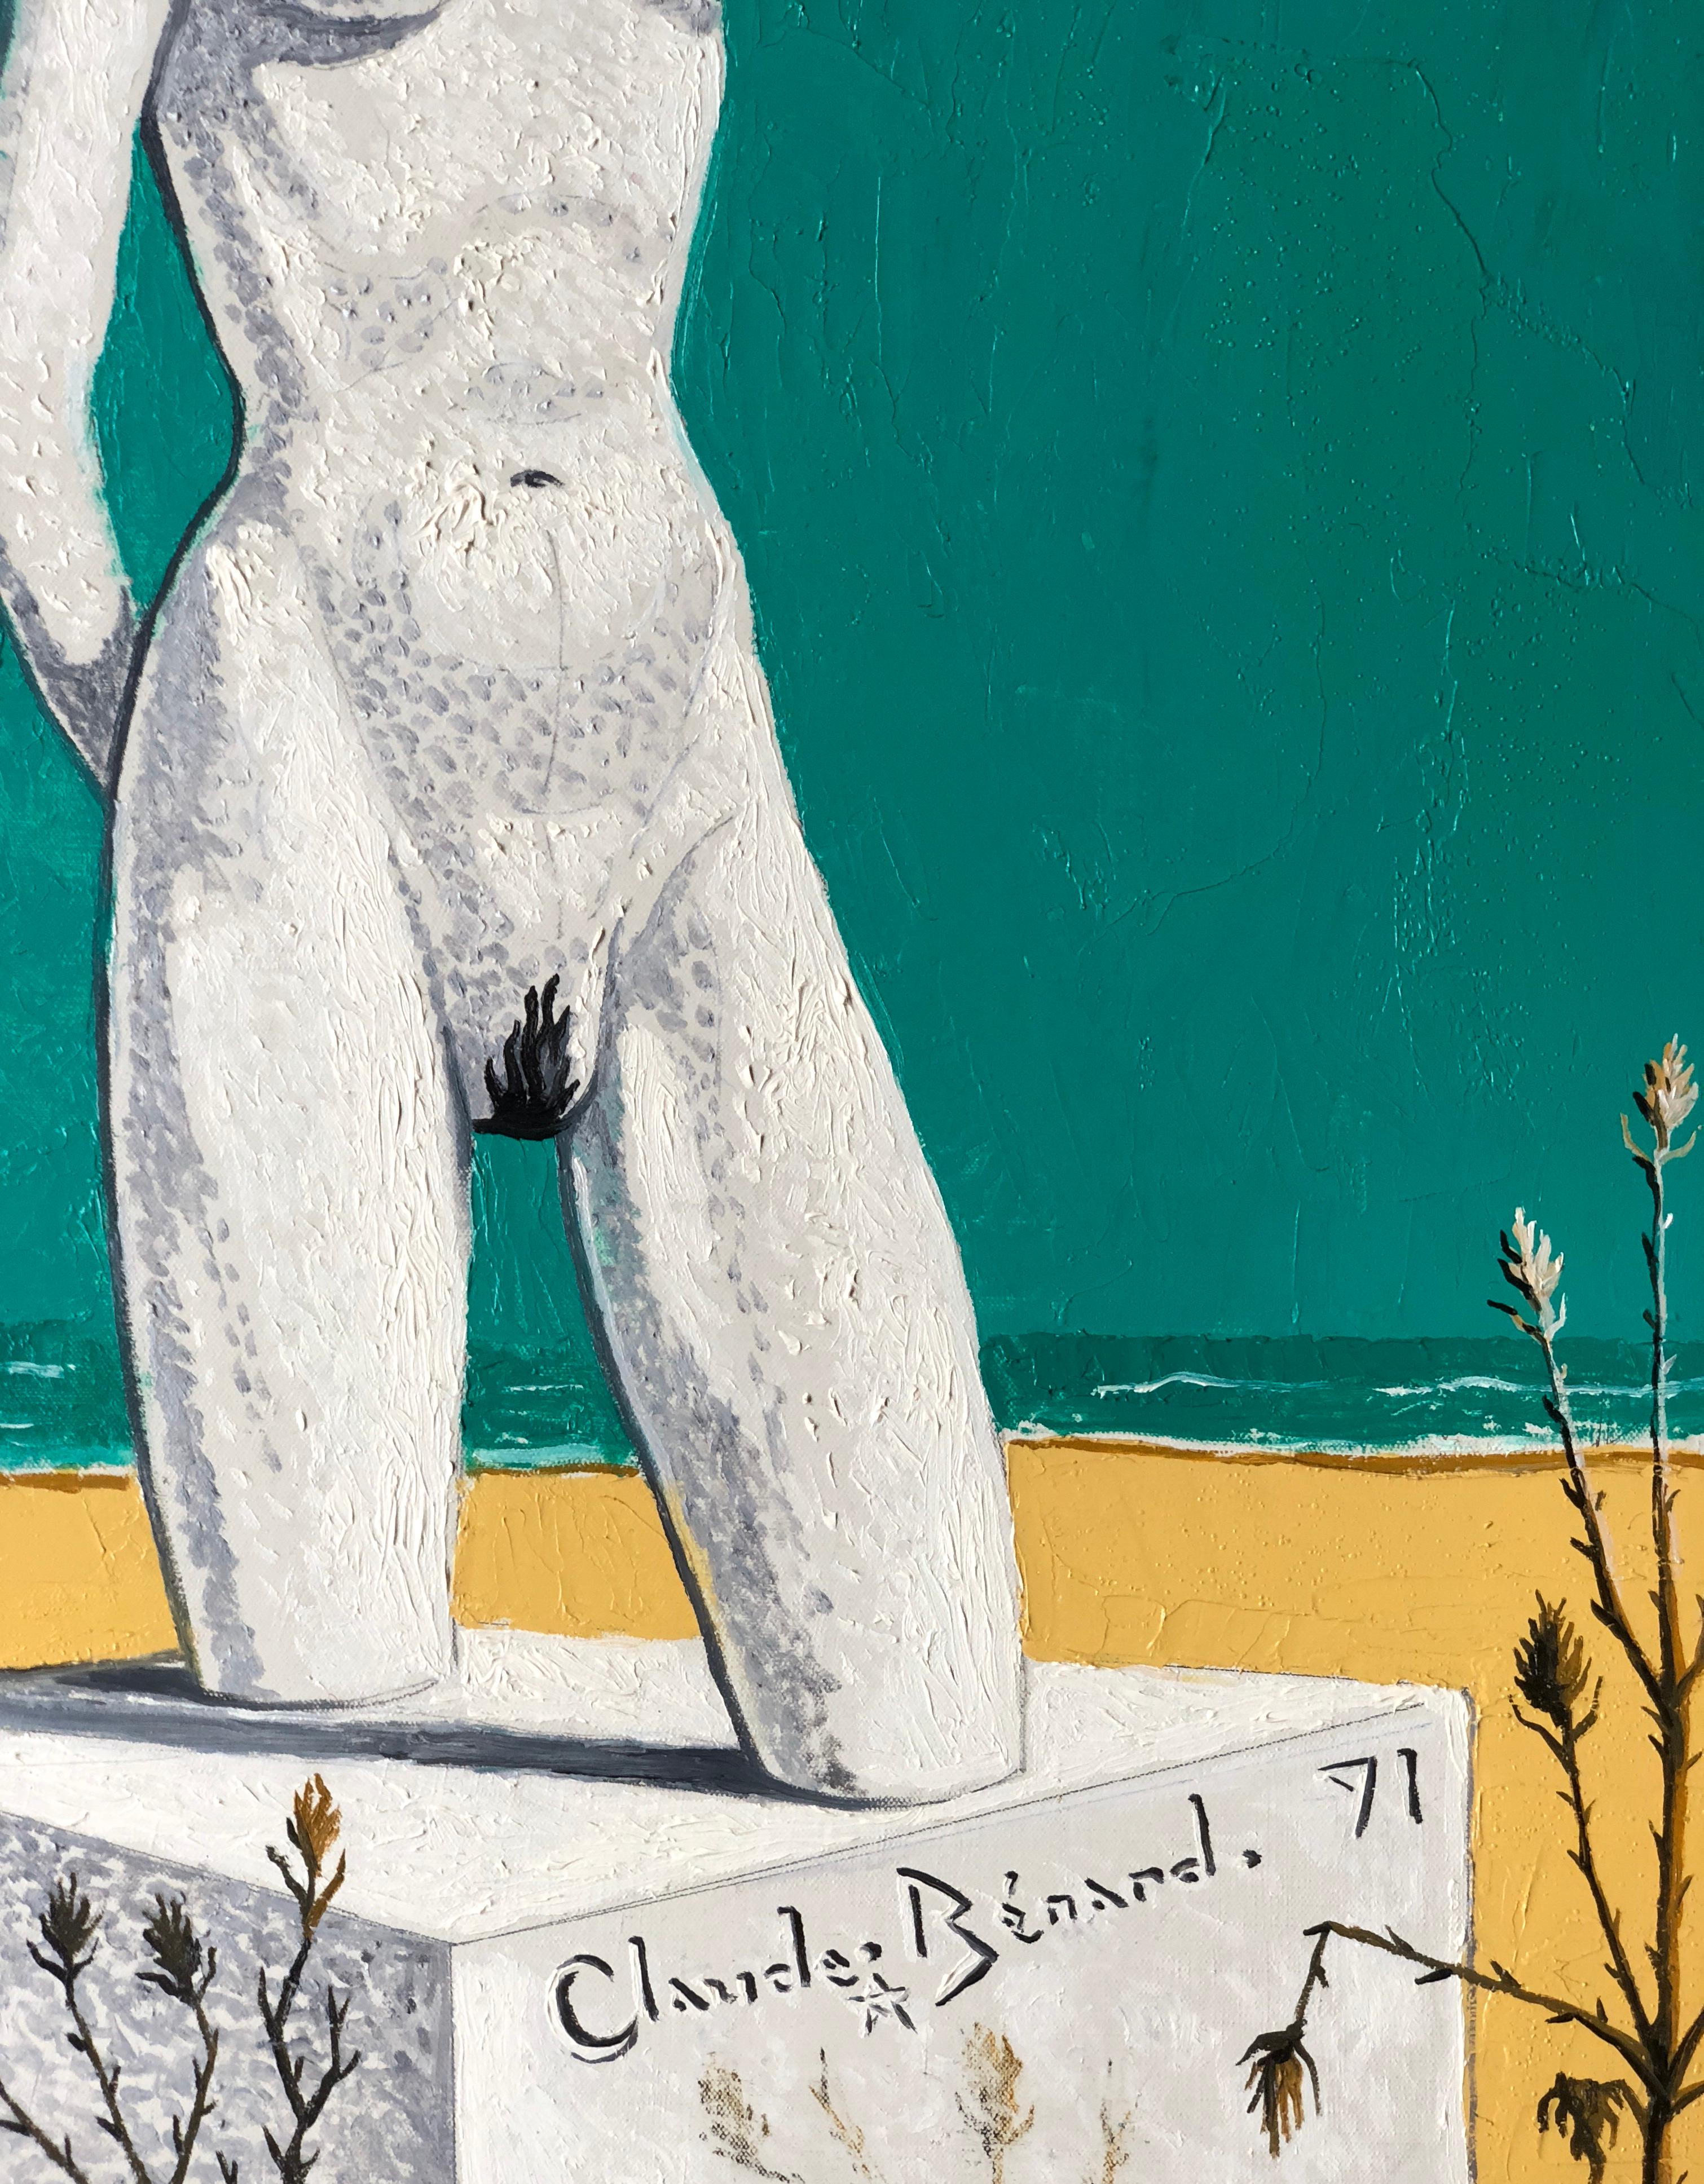 Nudist Statue on Beach, 